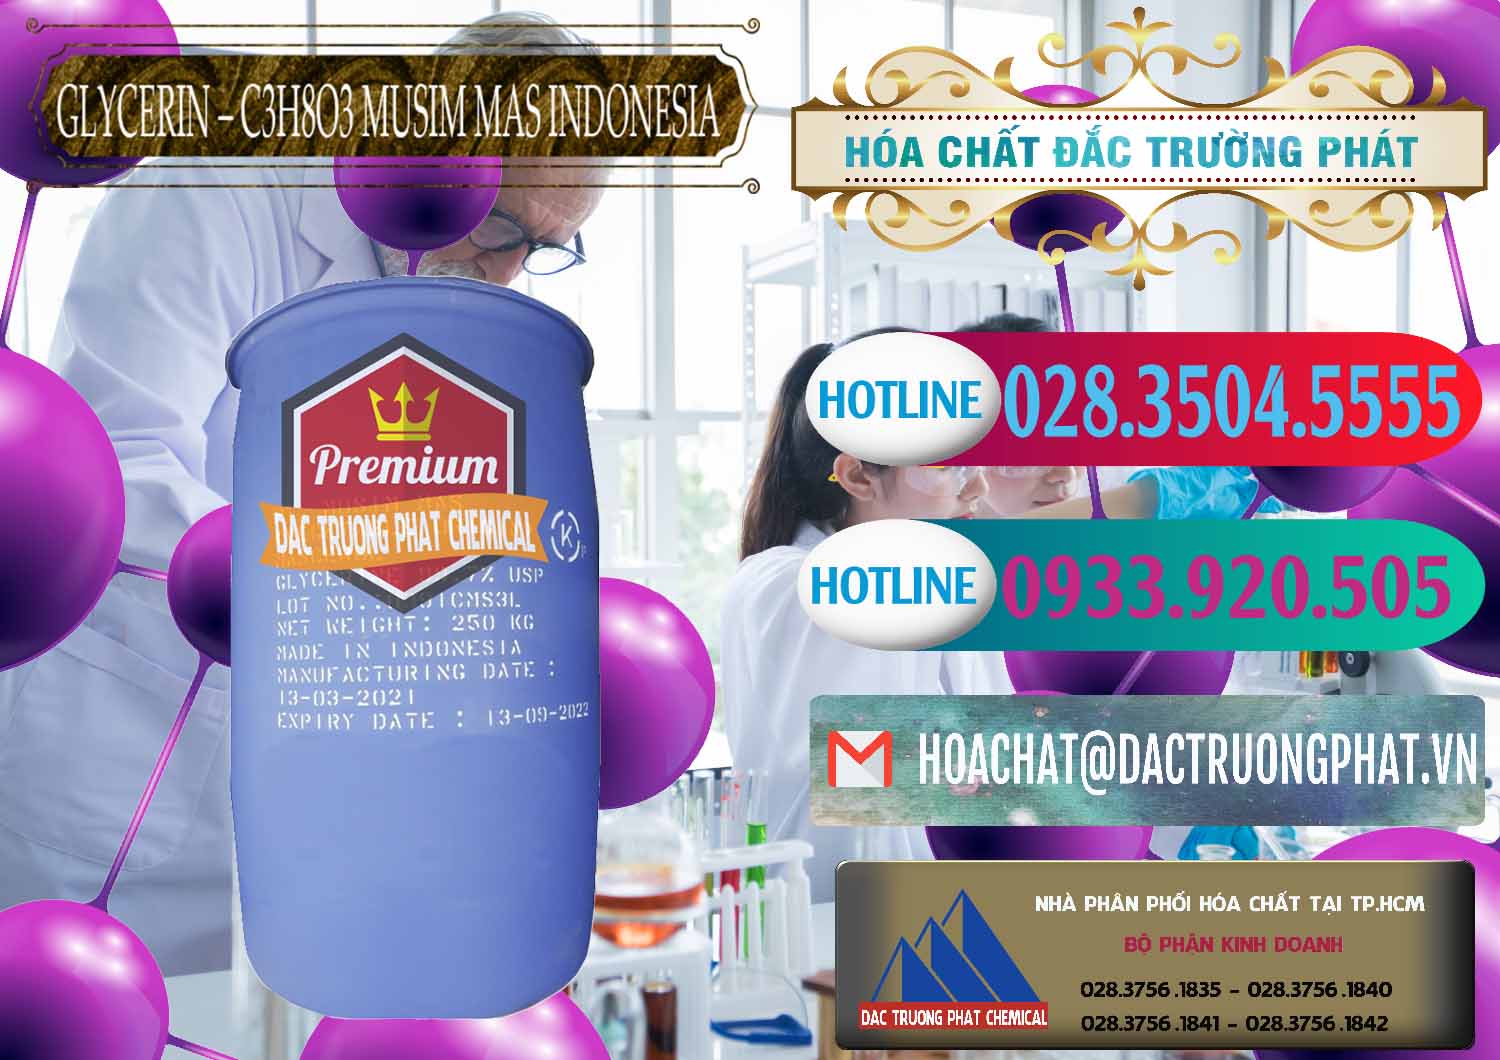 Cty chuyên bán _ cung ứng Glycerin – C3H8O3 99.7% Musim Mas Indonesia - 0272 - Cty chuyên phân phối và nhập khẩu hóa chất tại TP.HCM - truongphat.vn